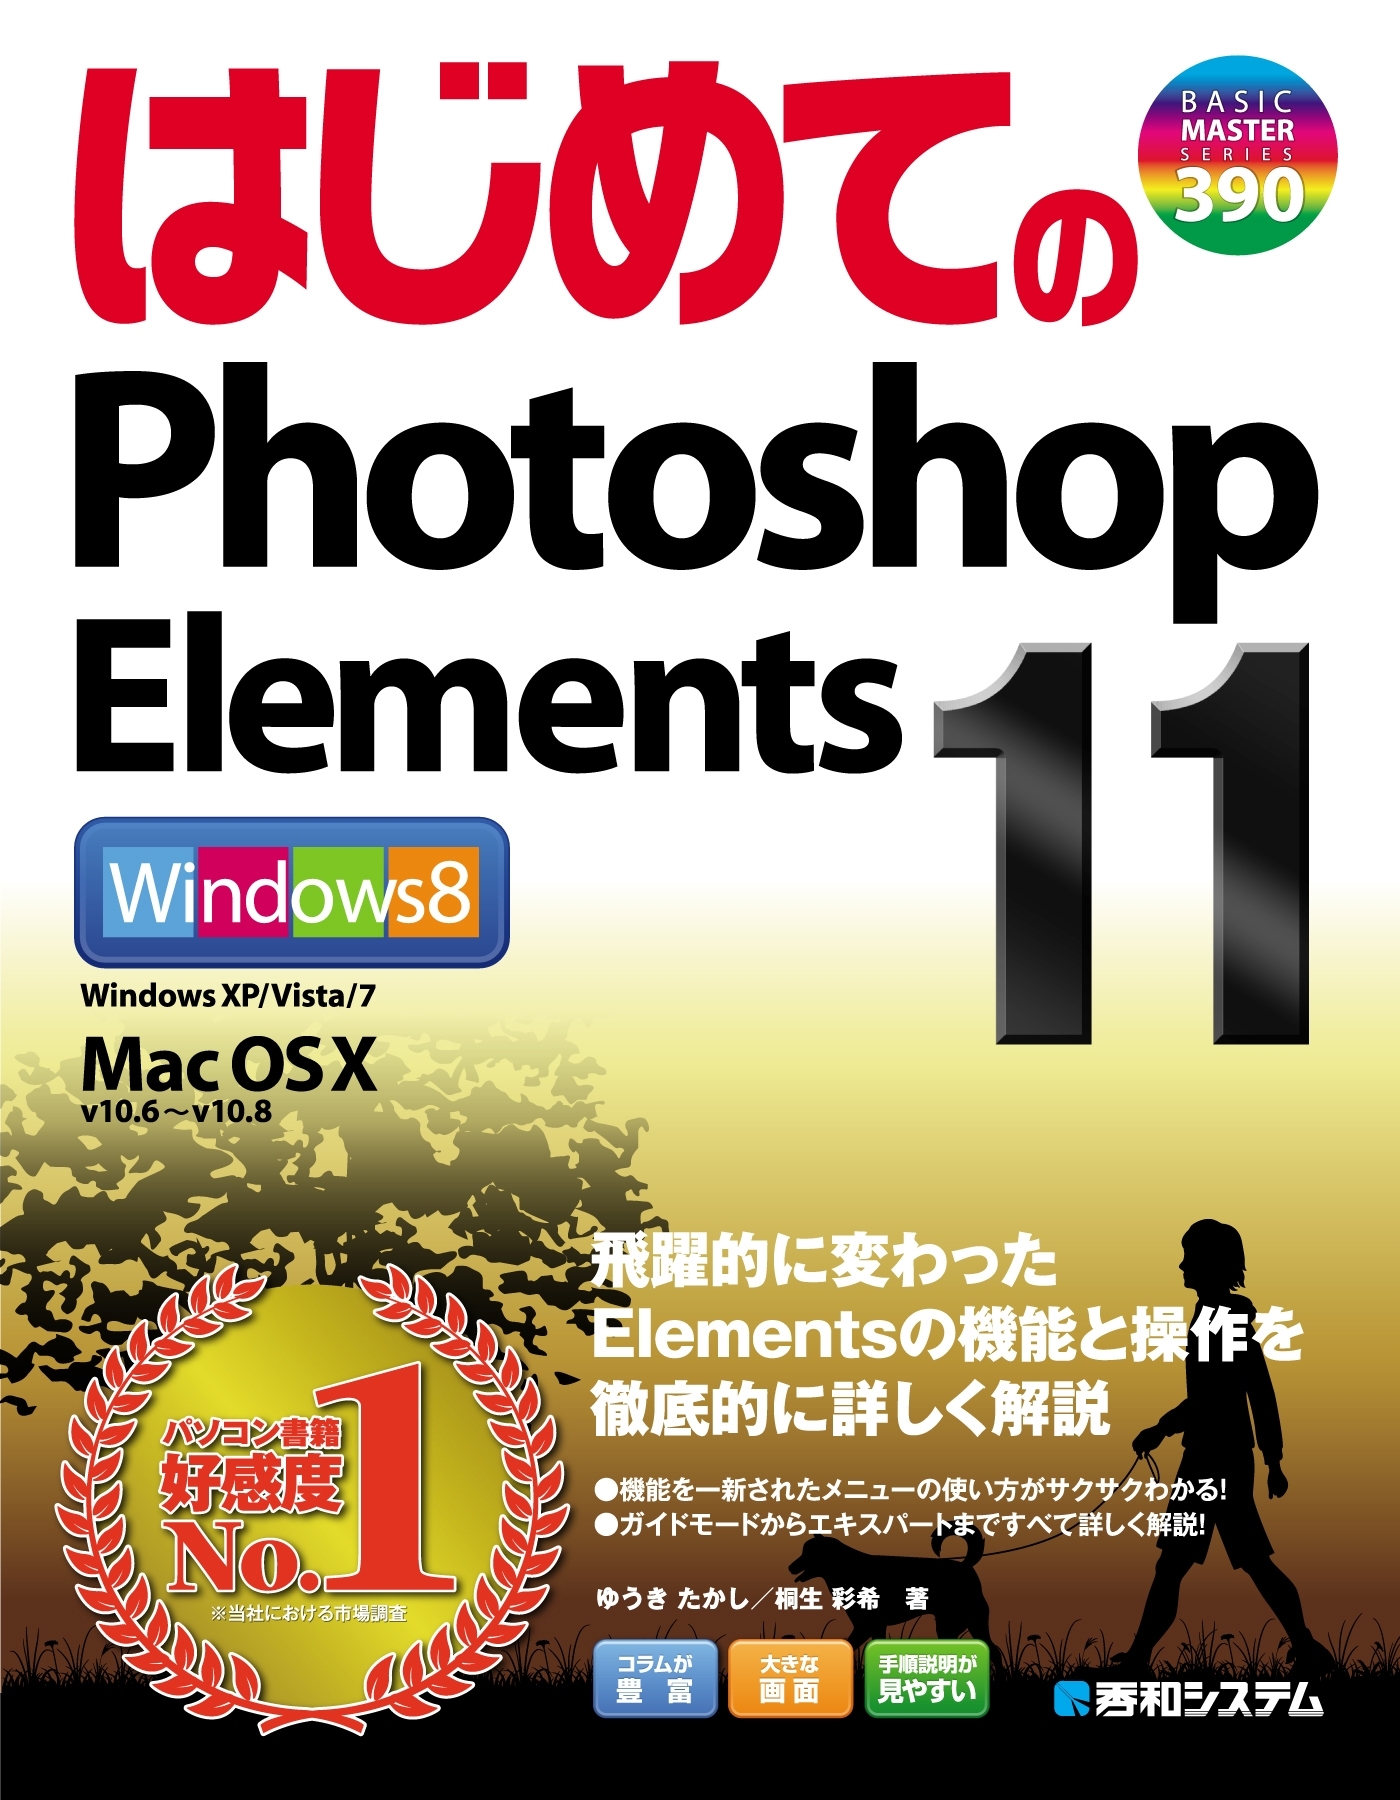 いますぐ使える Photoshop Elements3.0 for Windows オールカラーで